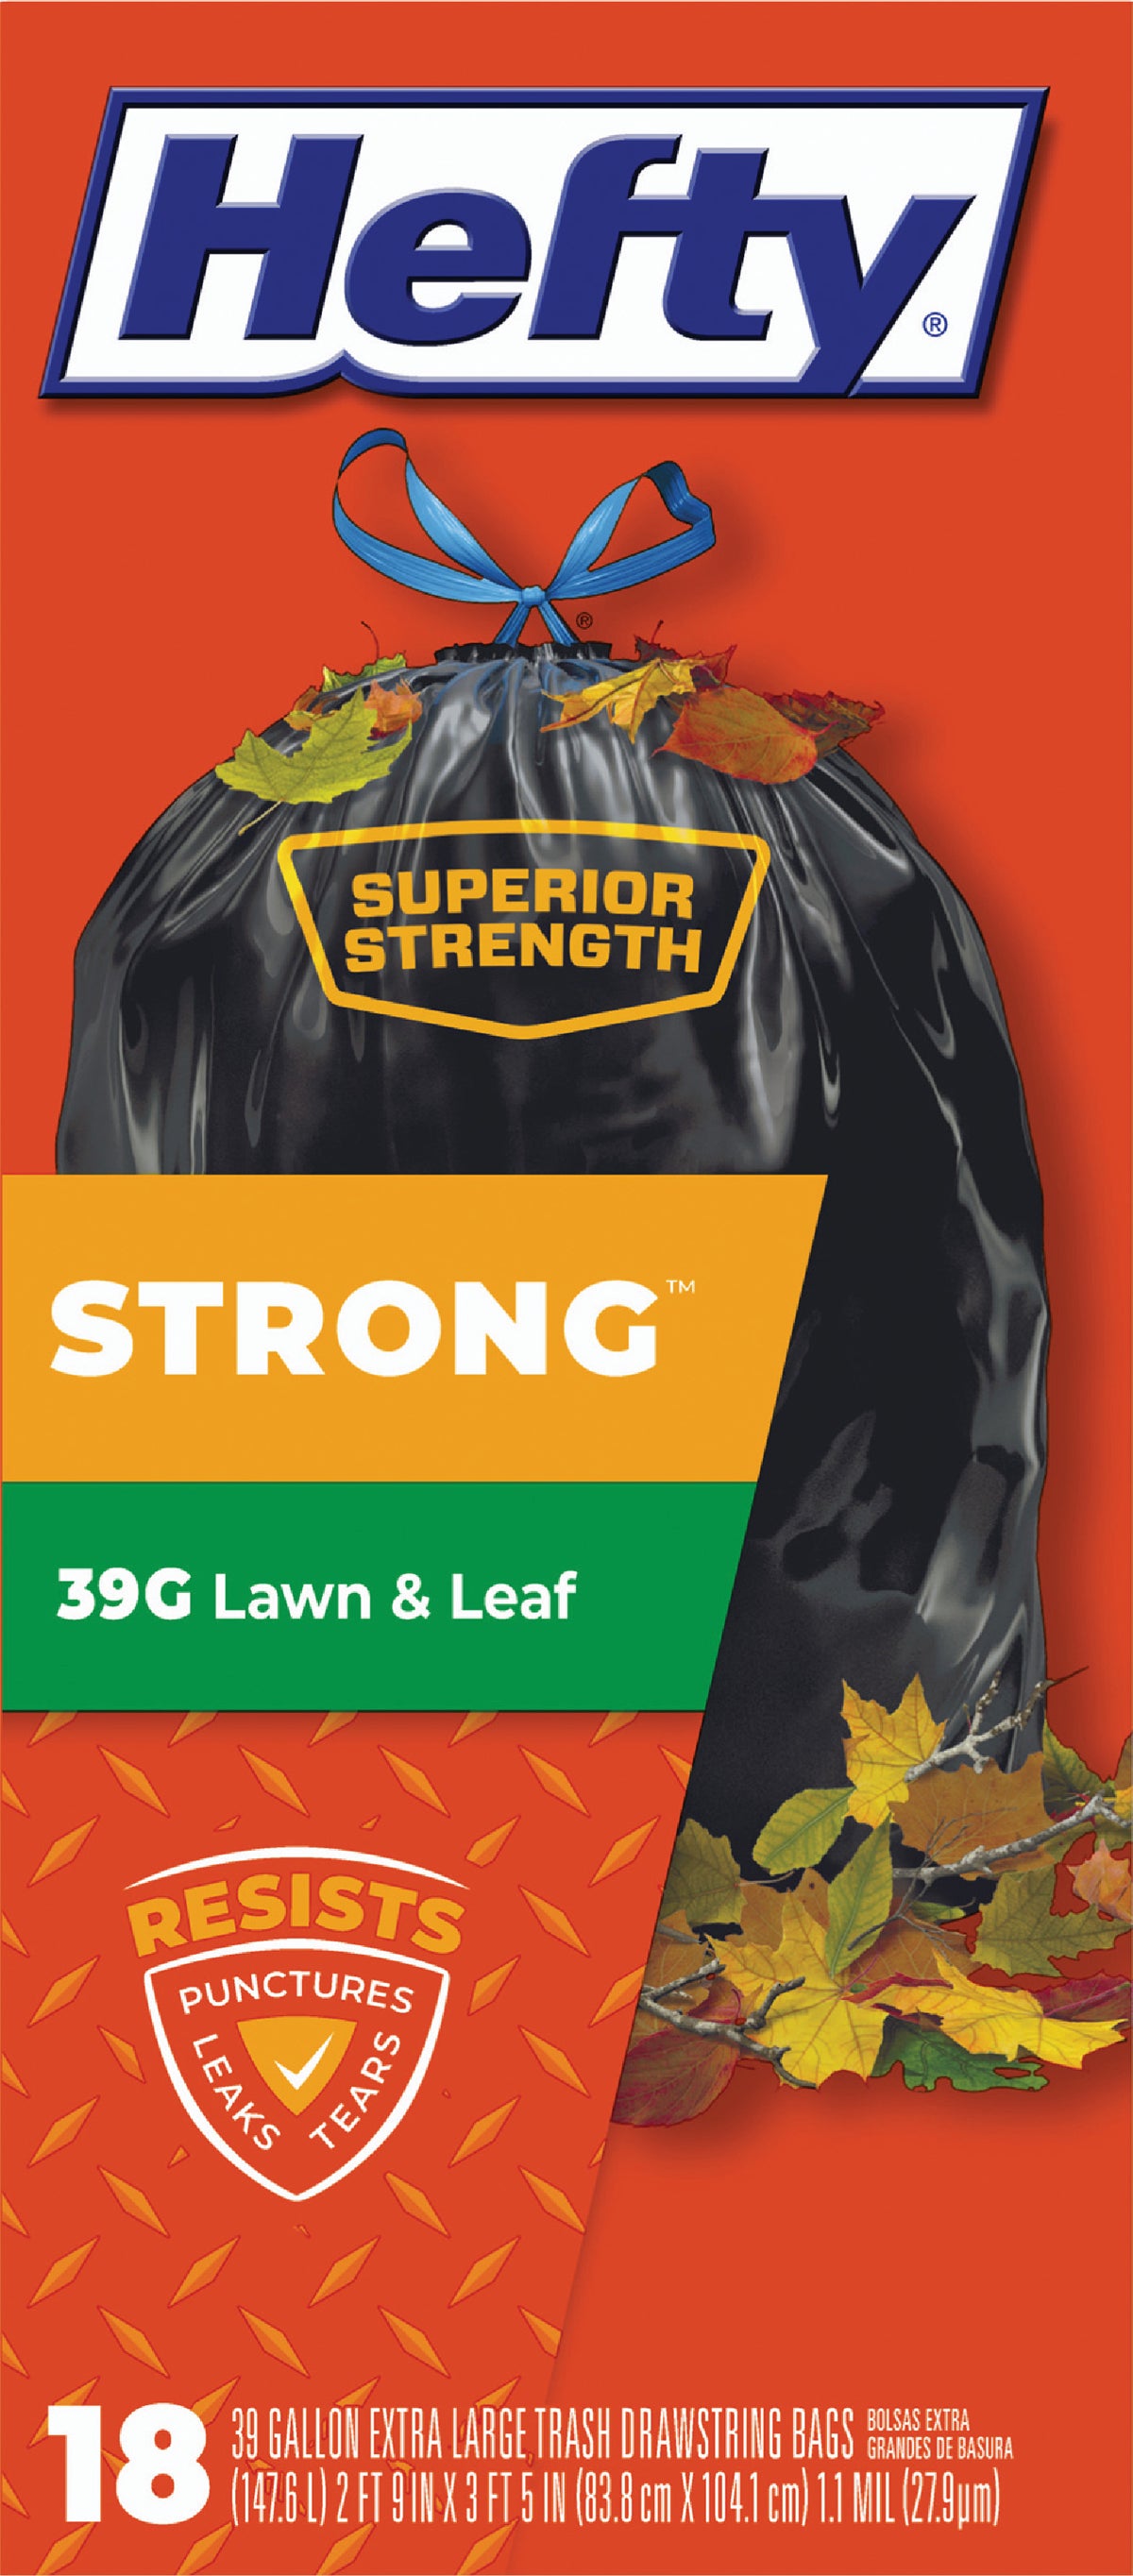 Buy Hefty Strong Lawn & Leaf Bag 39 Gal., Black